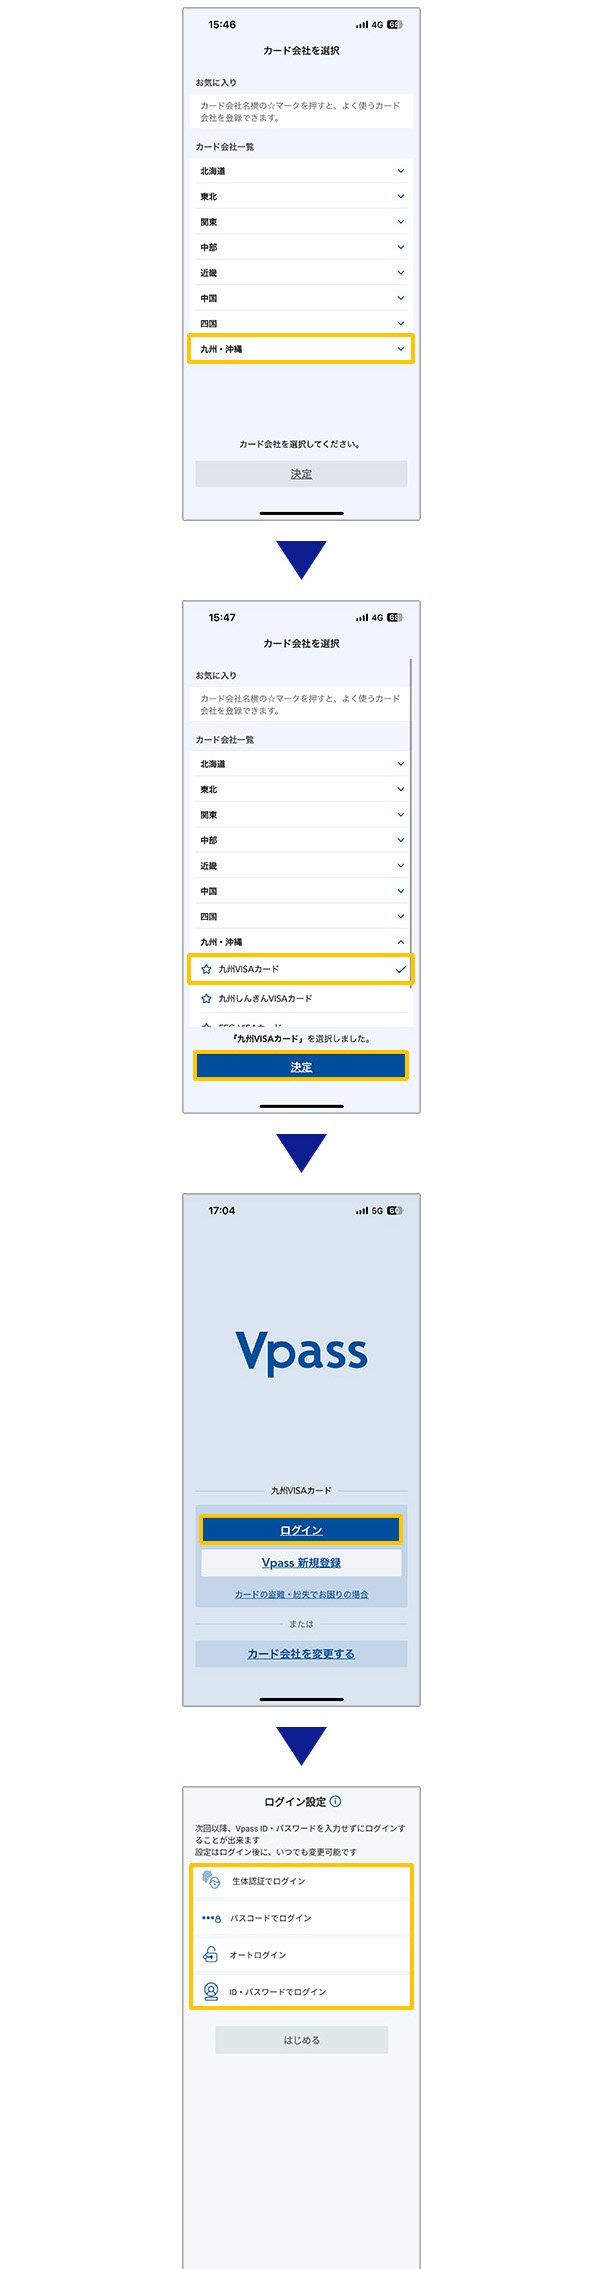 「Vpassアプリのログイン方法」カード会社を選択